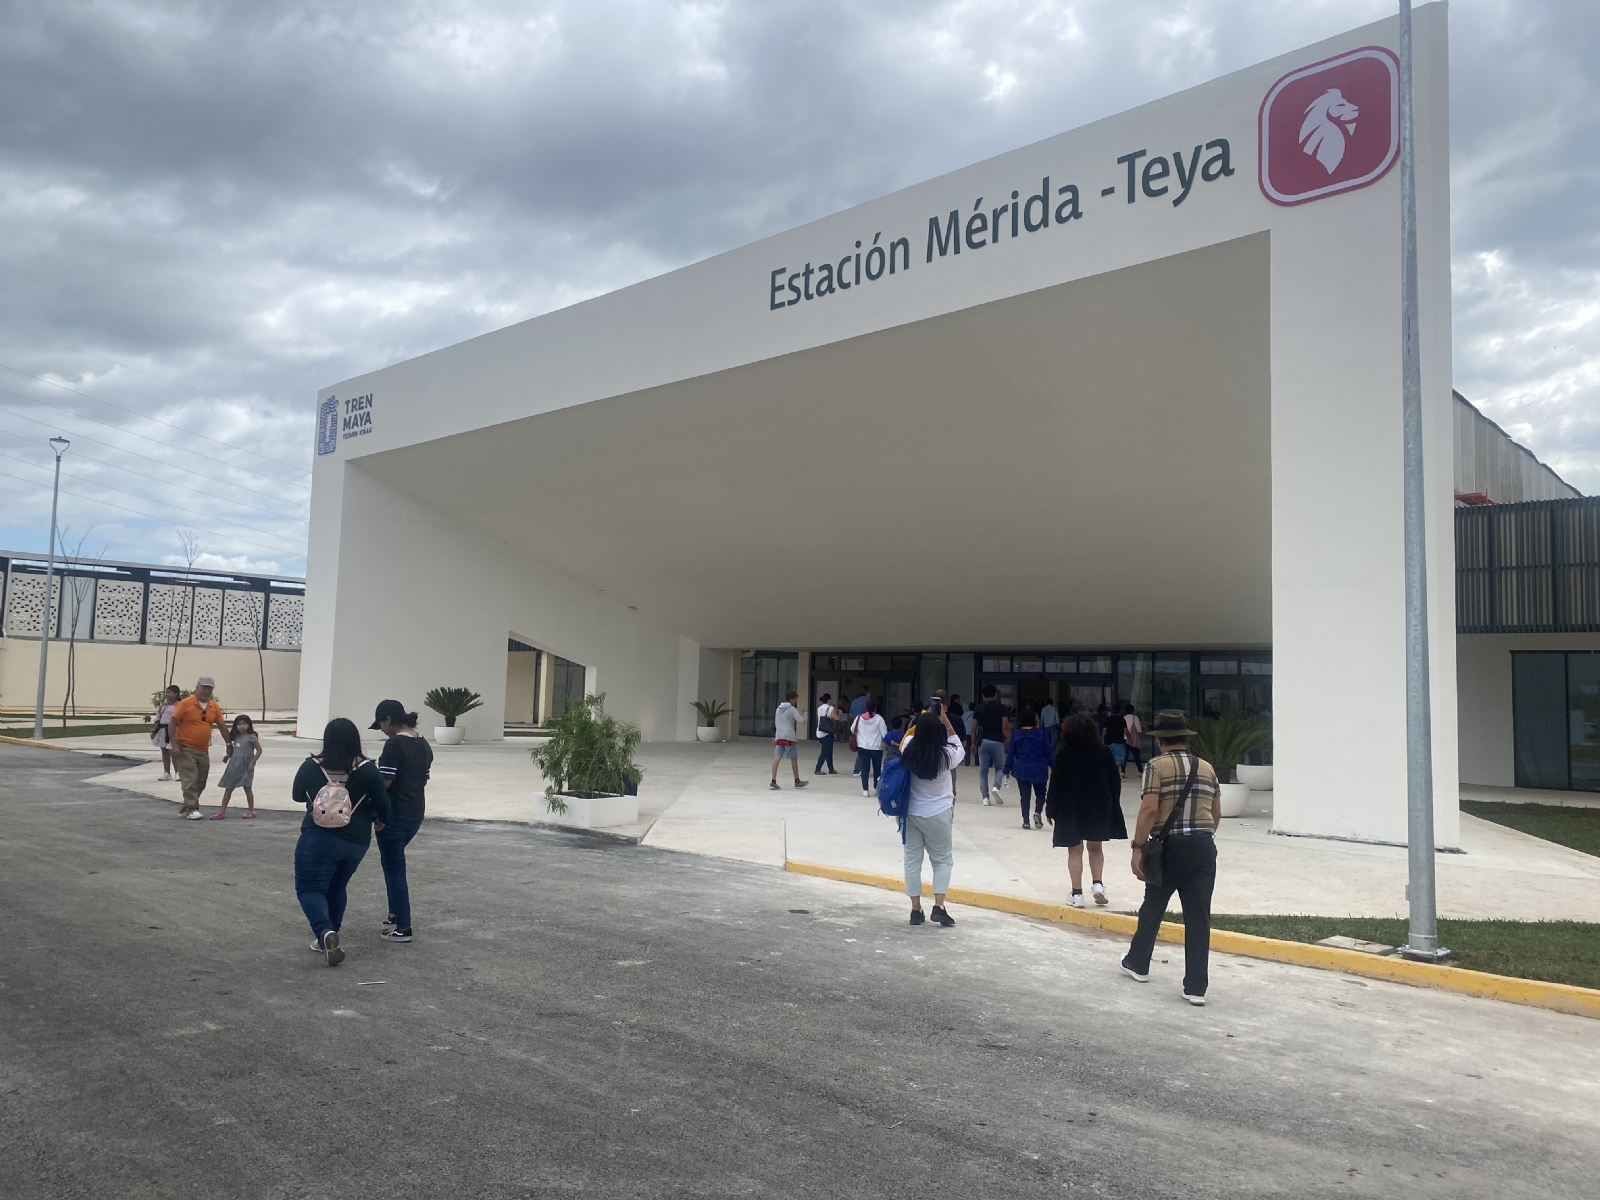 Tren Maya: Conoce la lista completa de precios en la Estación Teya de Mérida